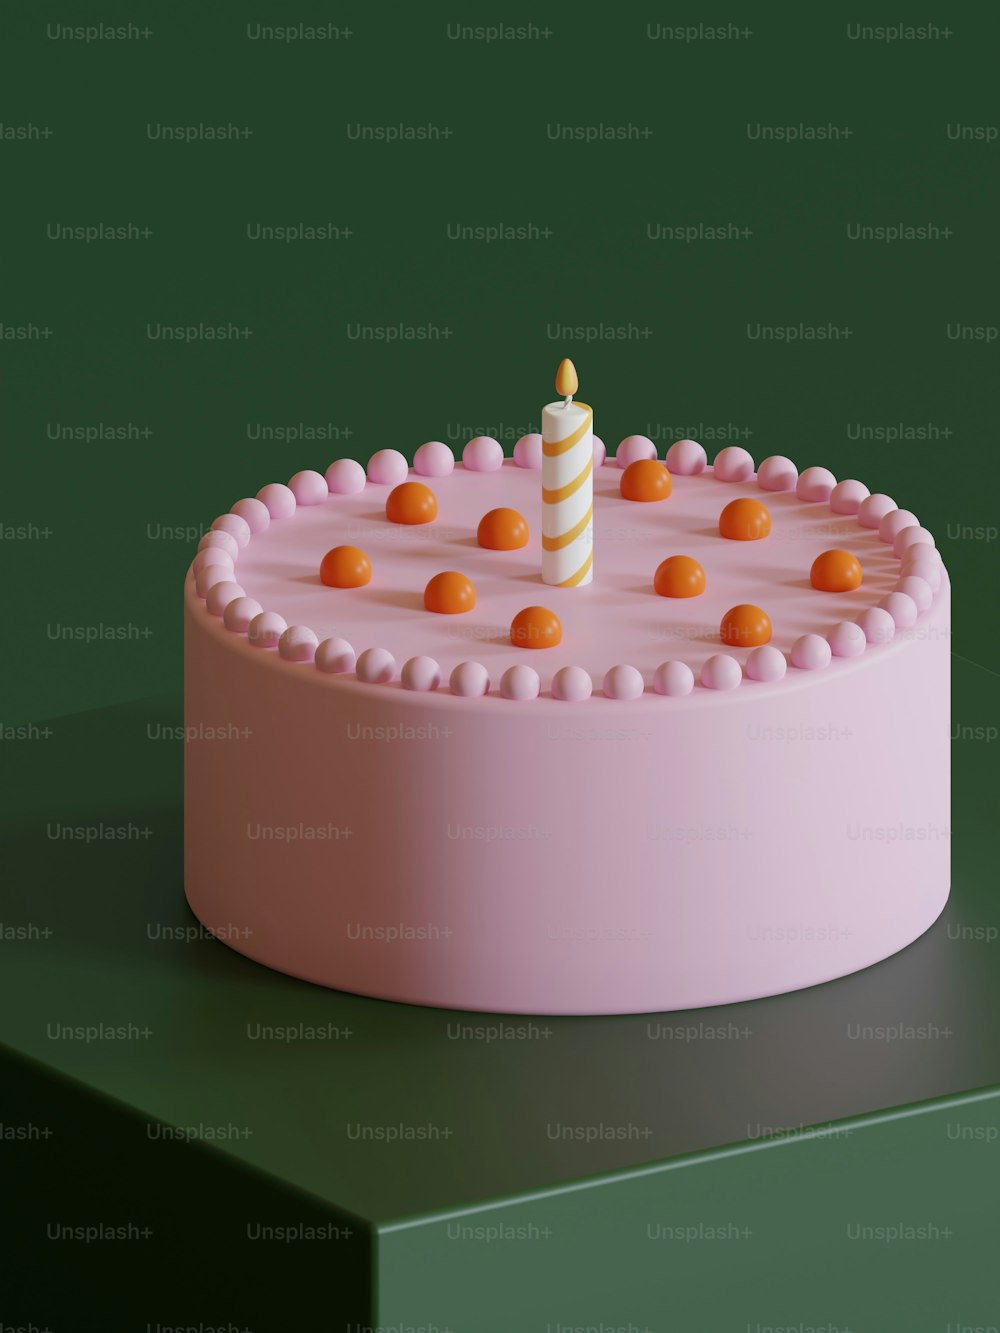 その上に1本のろうそくが付いたピンク��のケーキ